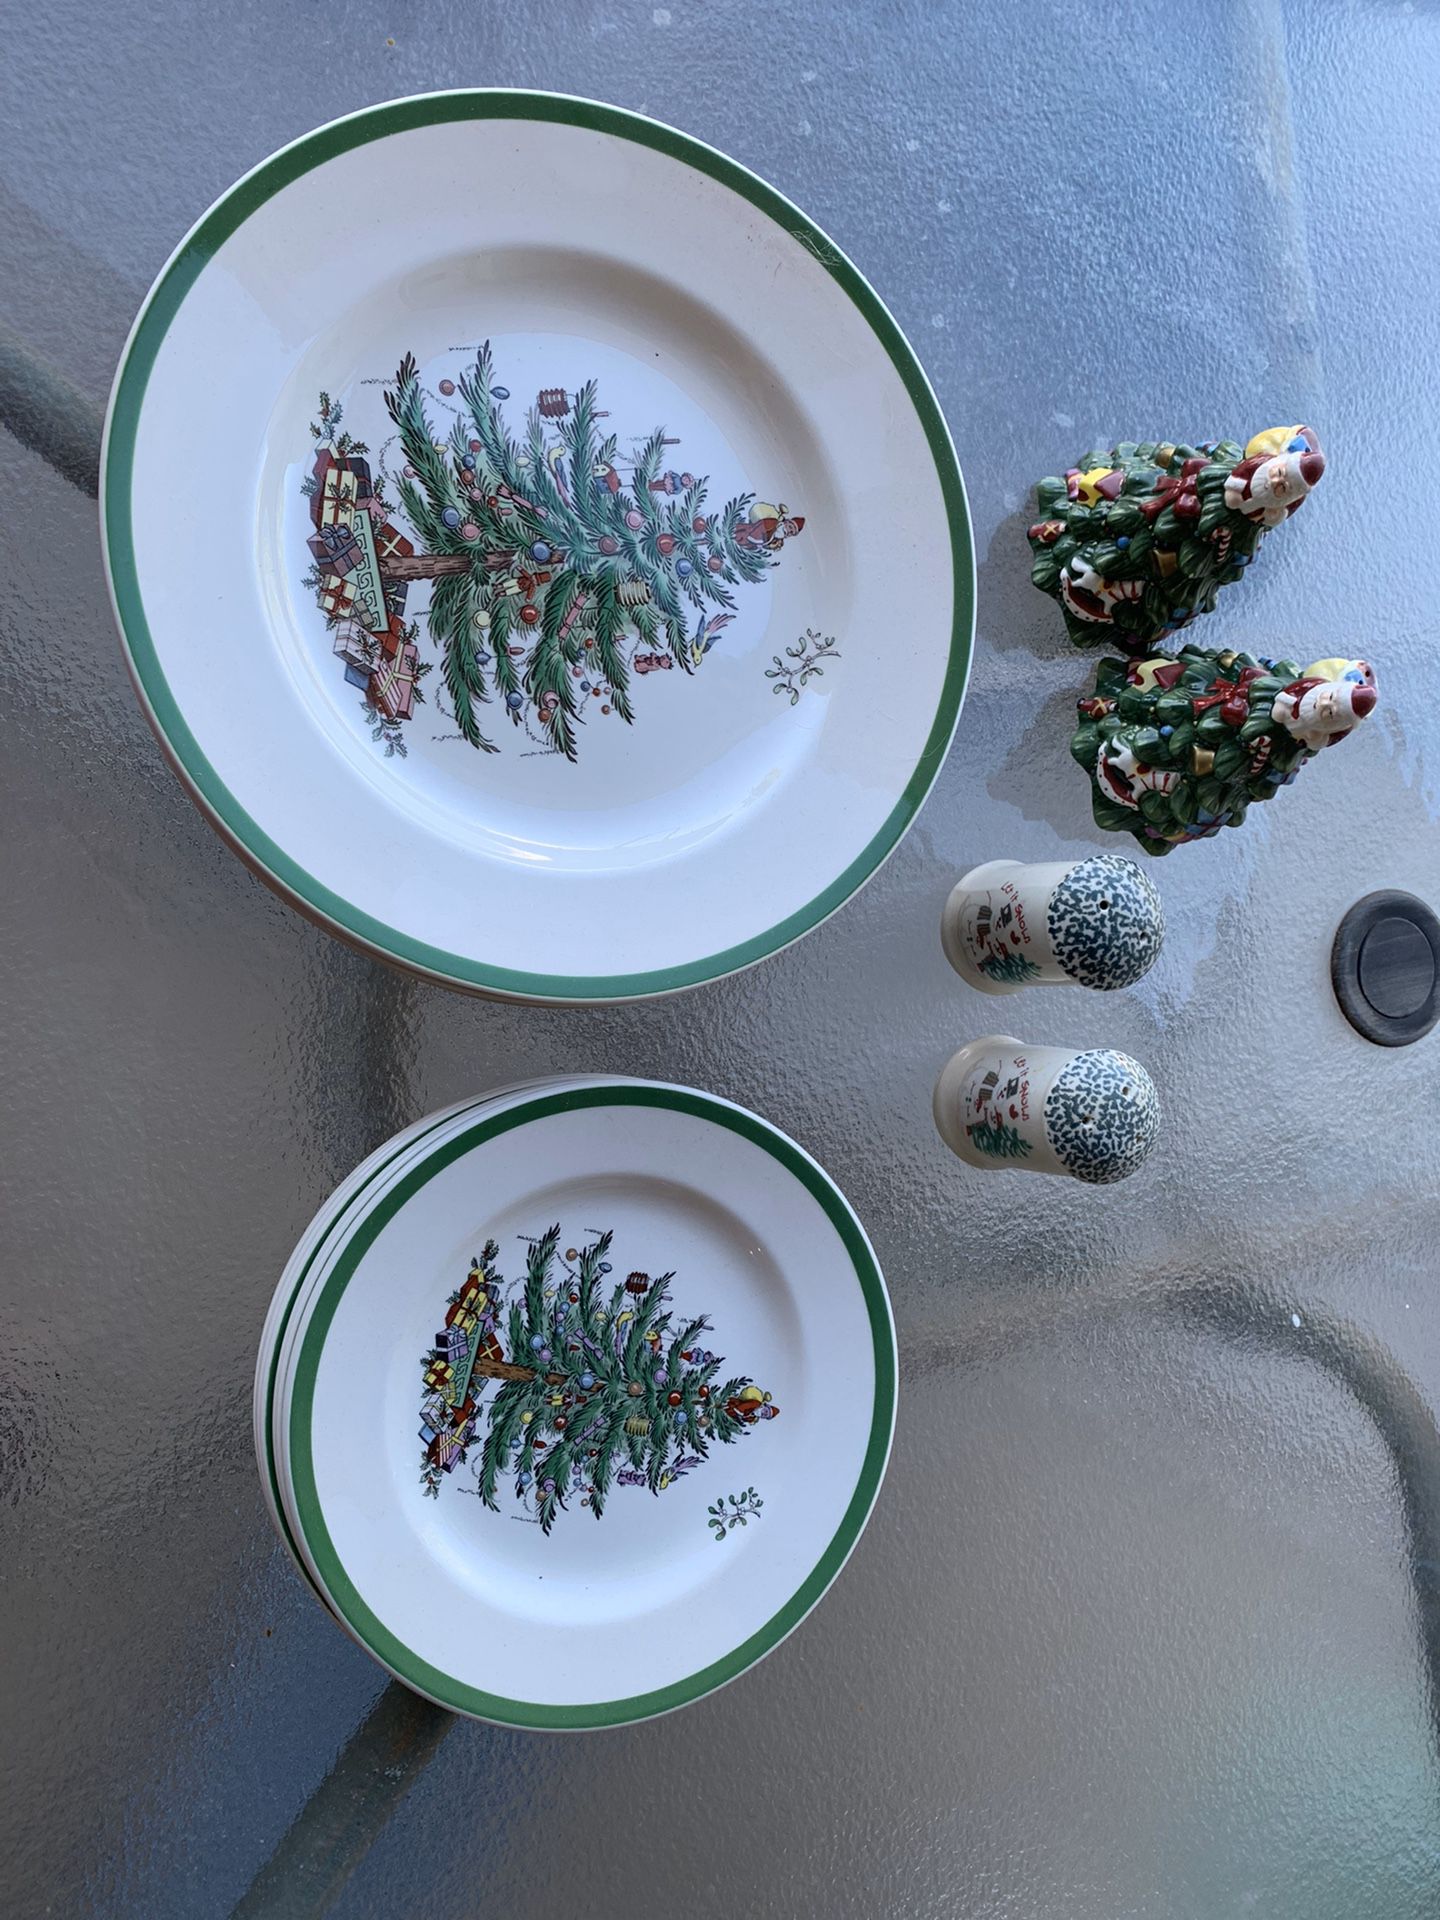 Spode Christmas plates